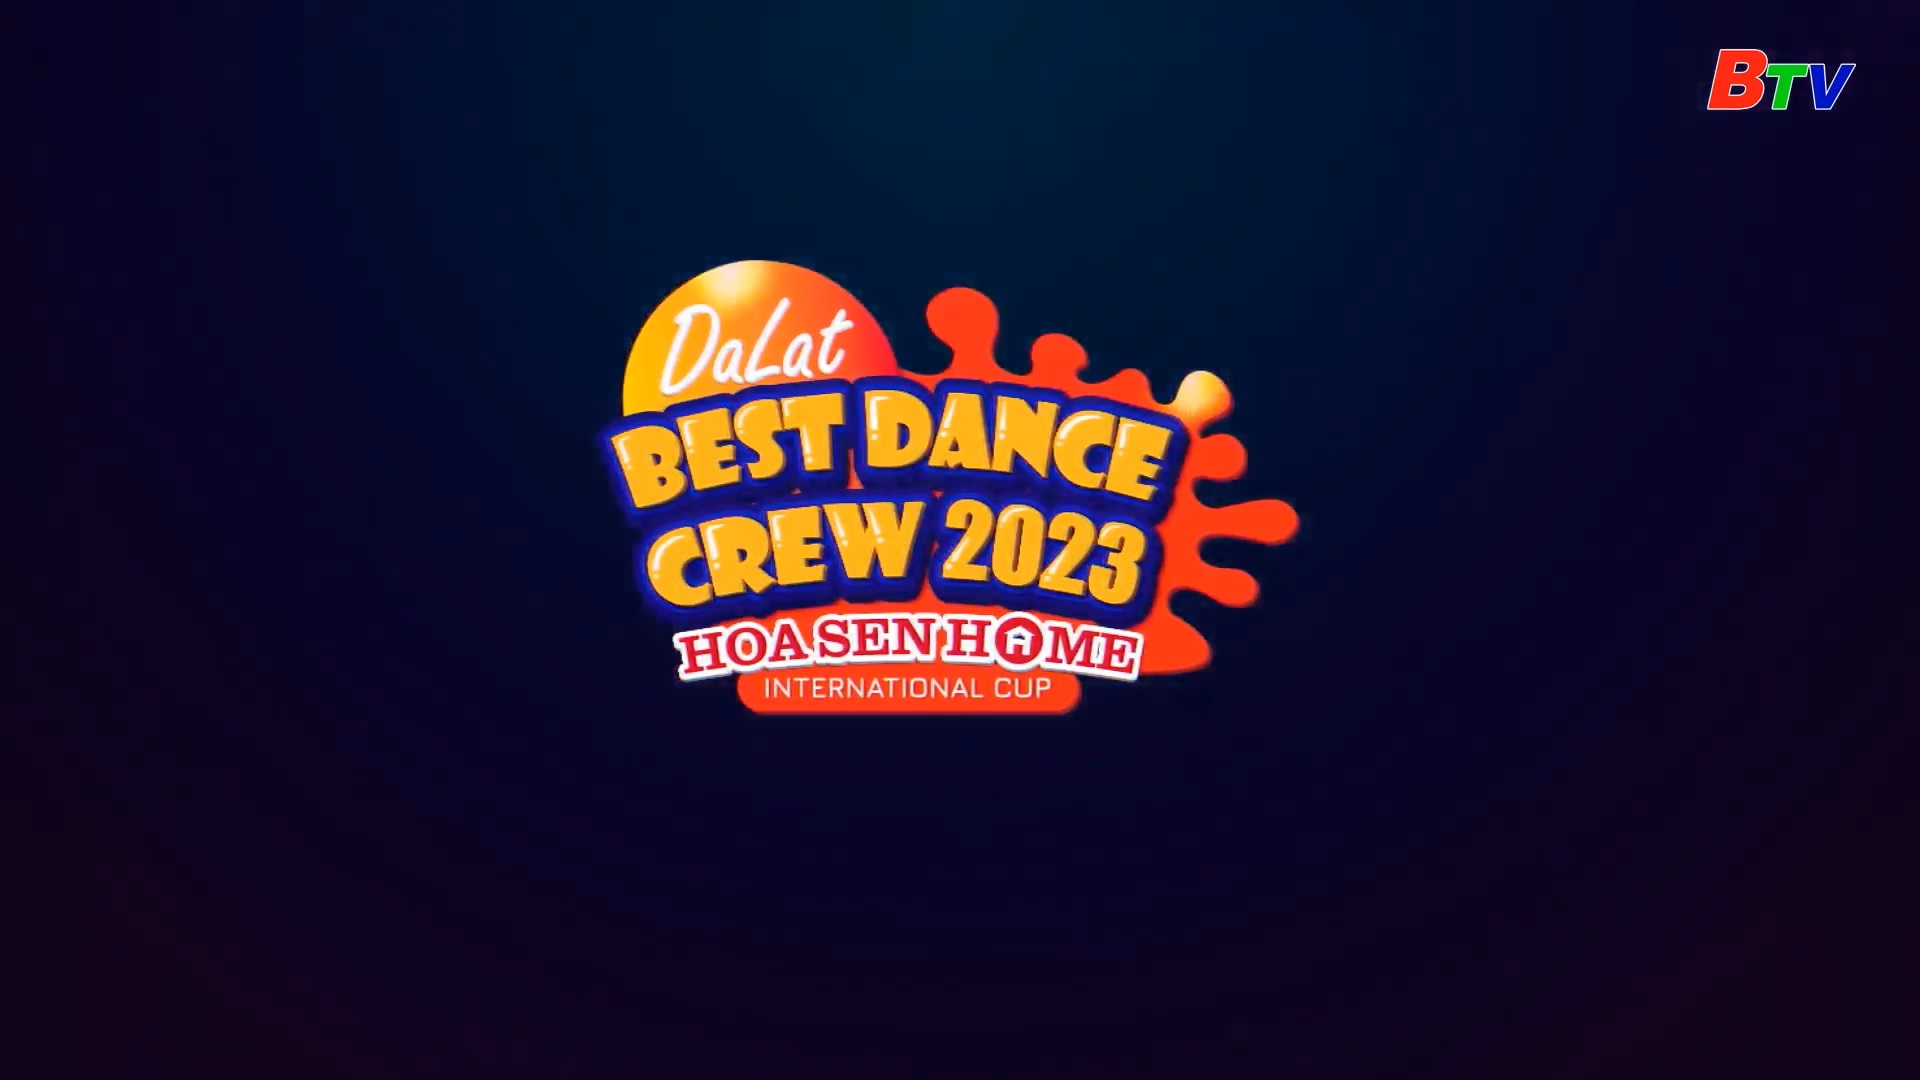 DALAT BEST DANCE CREW 2023 HOA SEN HOME INTERNATIONAL CUP